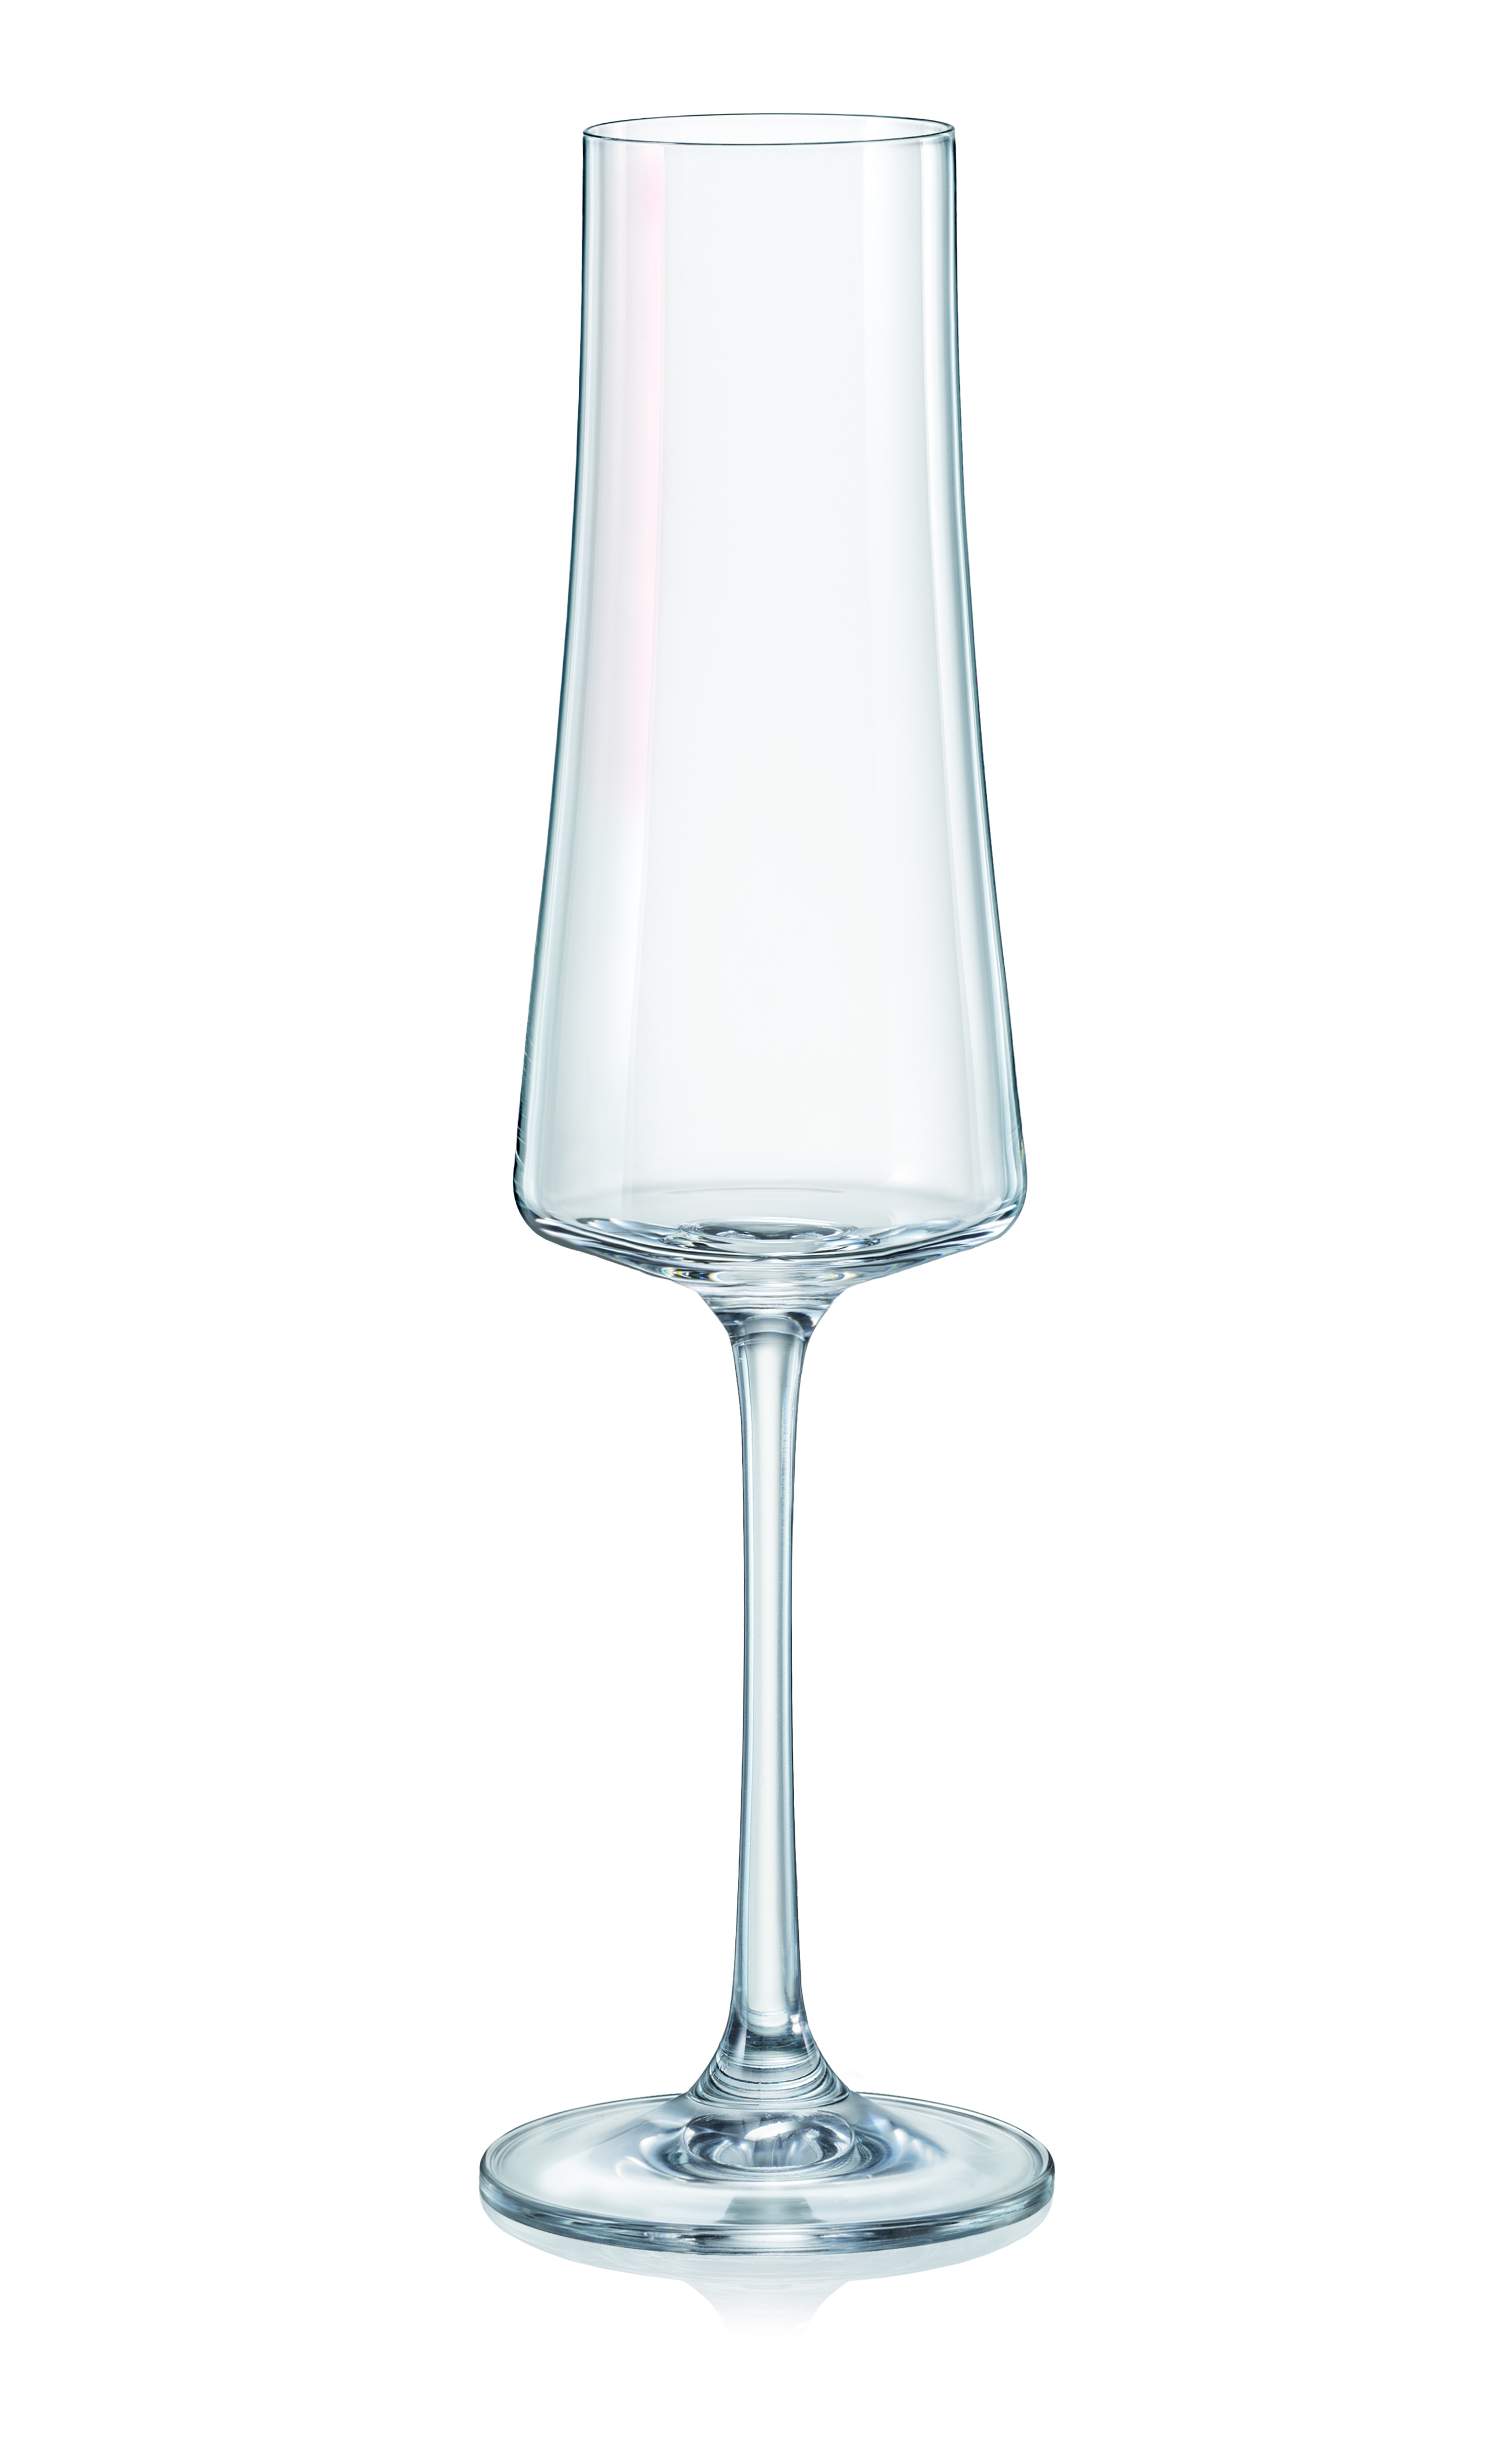 Ποτήρι Σαμπάνιας-Ούζου Κρυστάλλινο Bohemia Xtra 210ml CLX40862210 (Σετ 6 Τεμάχια) (Υλικό: Κρύσταλλο, Χρώμα: Διάφανο ) - Κρύσταλλα Βοημίας - CLX40862210